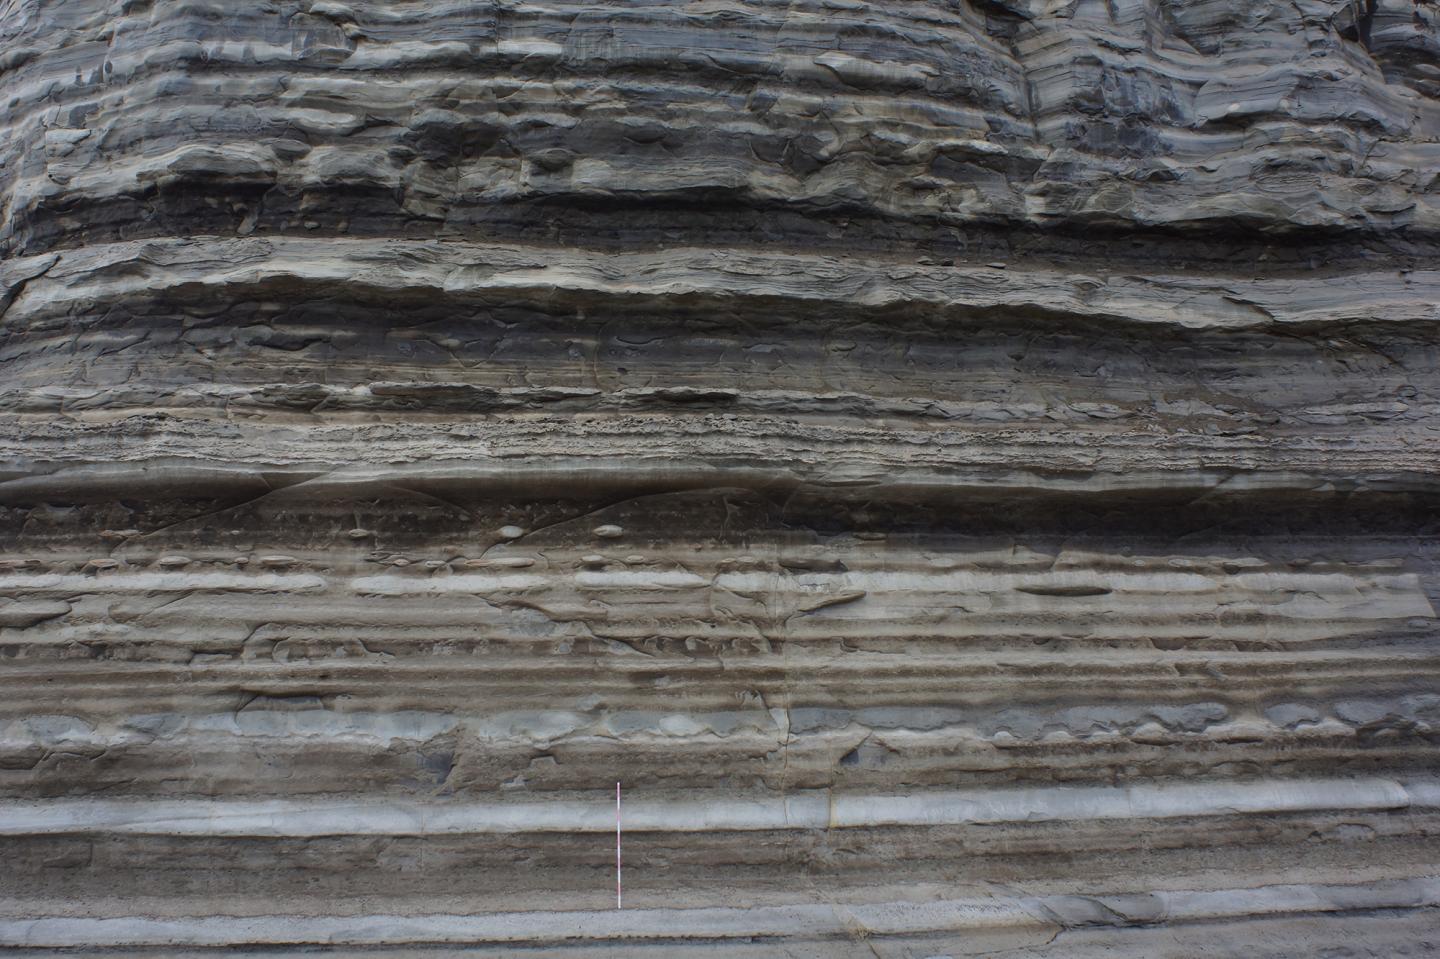 Cretaceous Sediment Formation